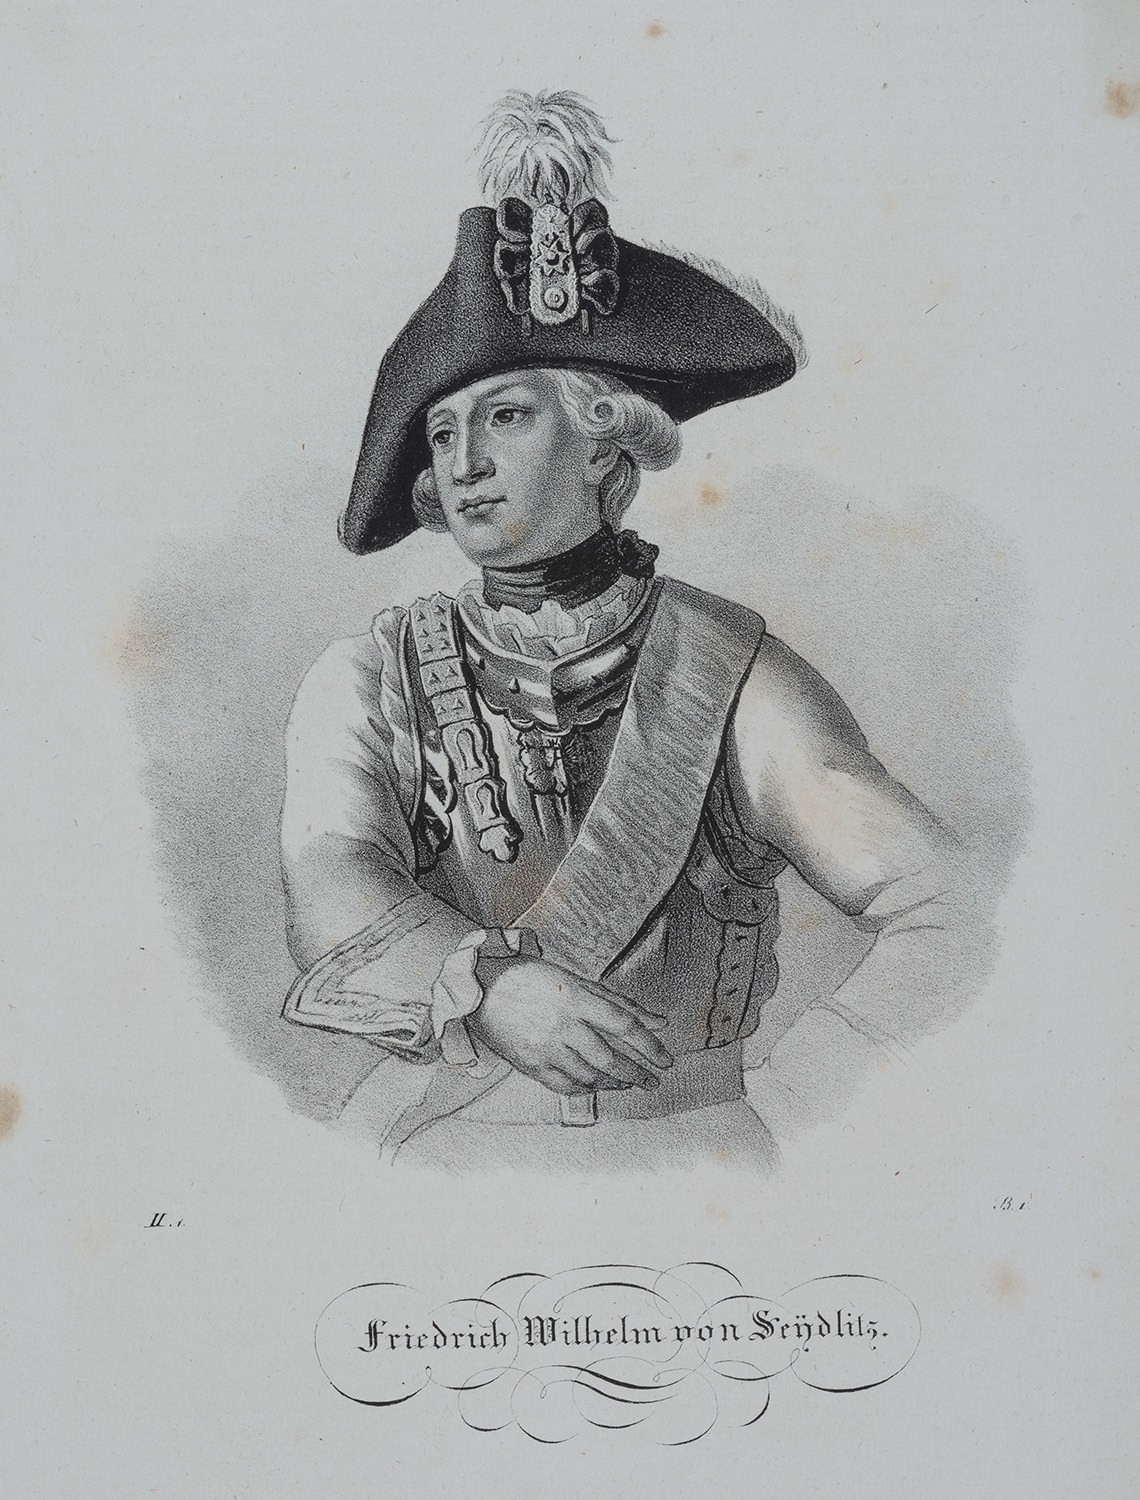 Seydlitz(-Kurzbach), Friedrich Wilhelm Frhr. von (1721-1773), preuß. General der Kavallerie (Landesgeschichtliche Vereinigung für die Mark Brandenburg e.V., Archiv CC BY)